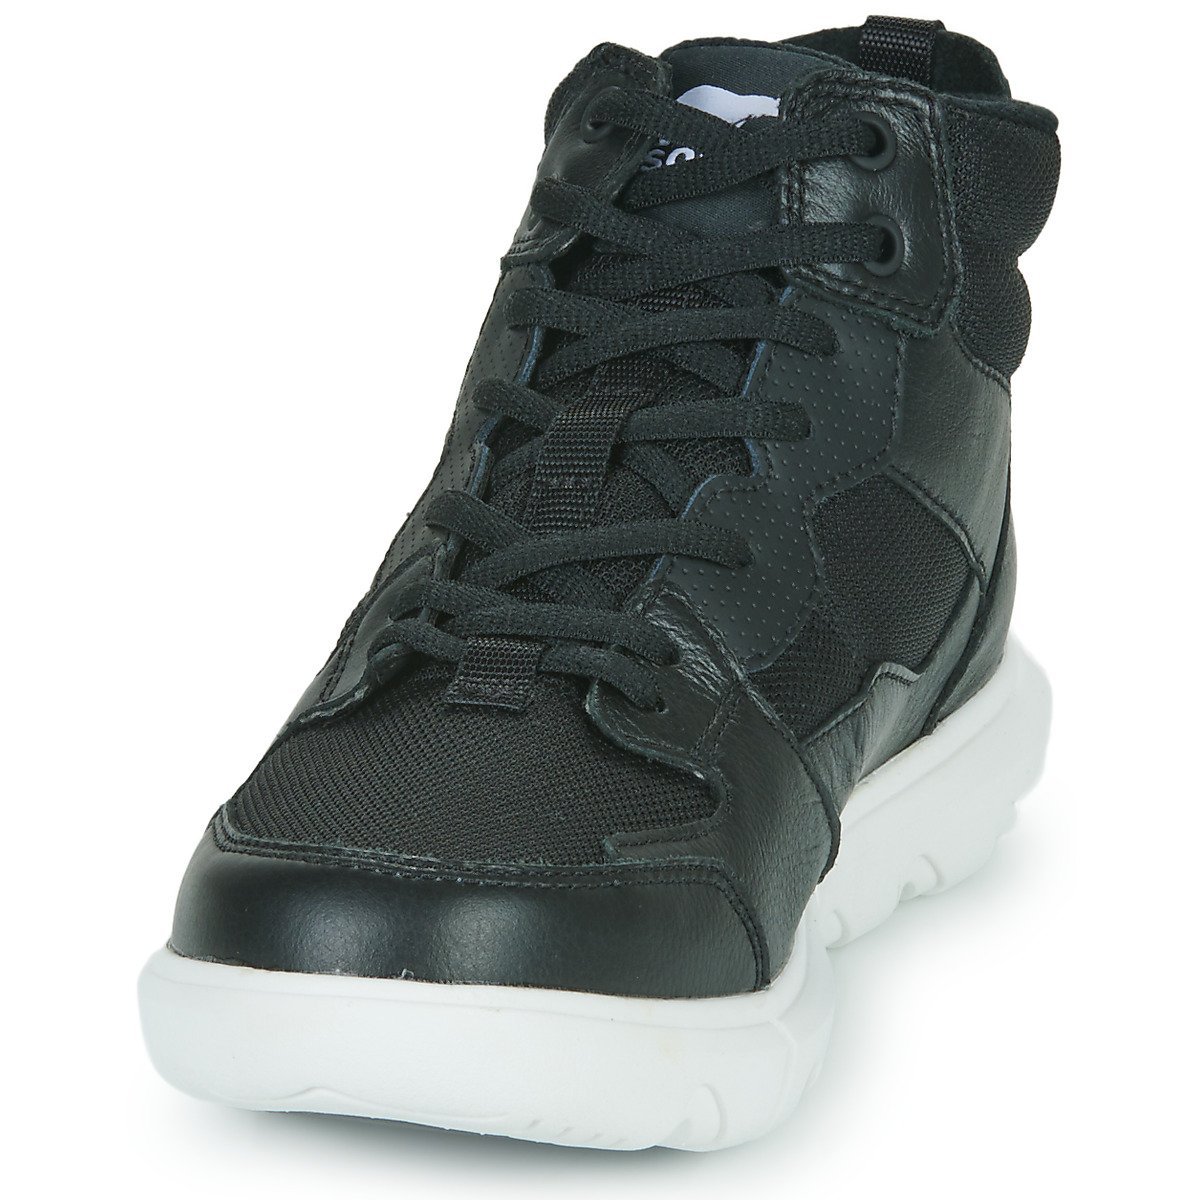 Obuv Sorel Explorer™ II Sneaker Mid WP W - čierna/biela